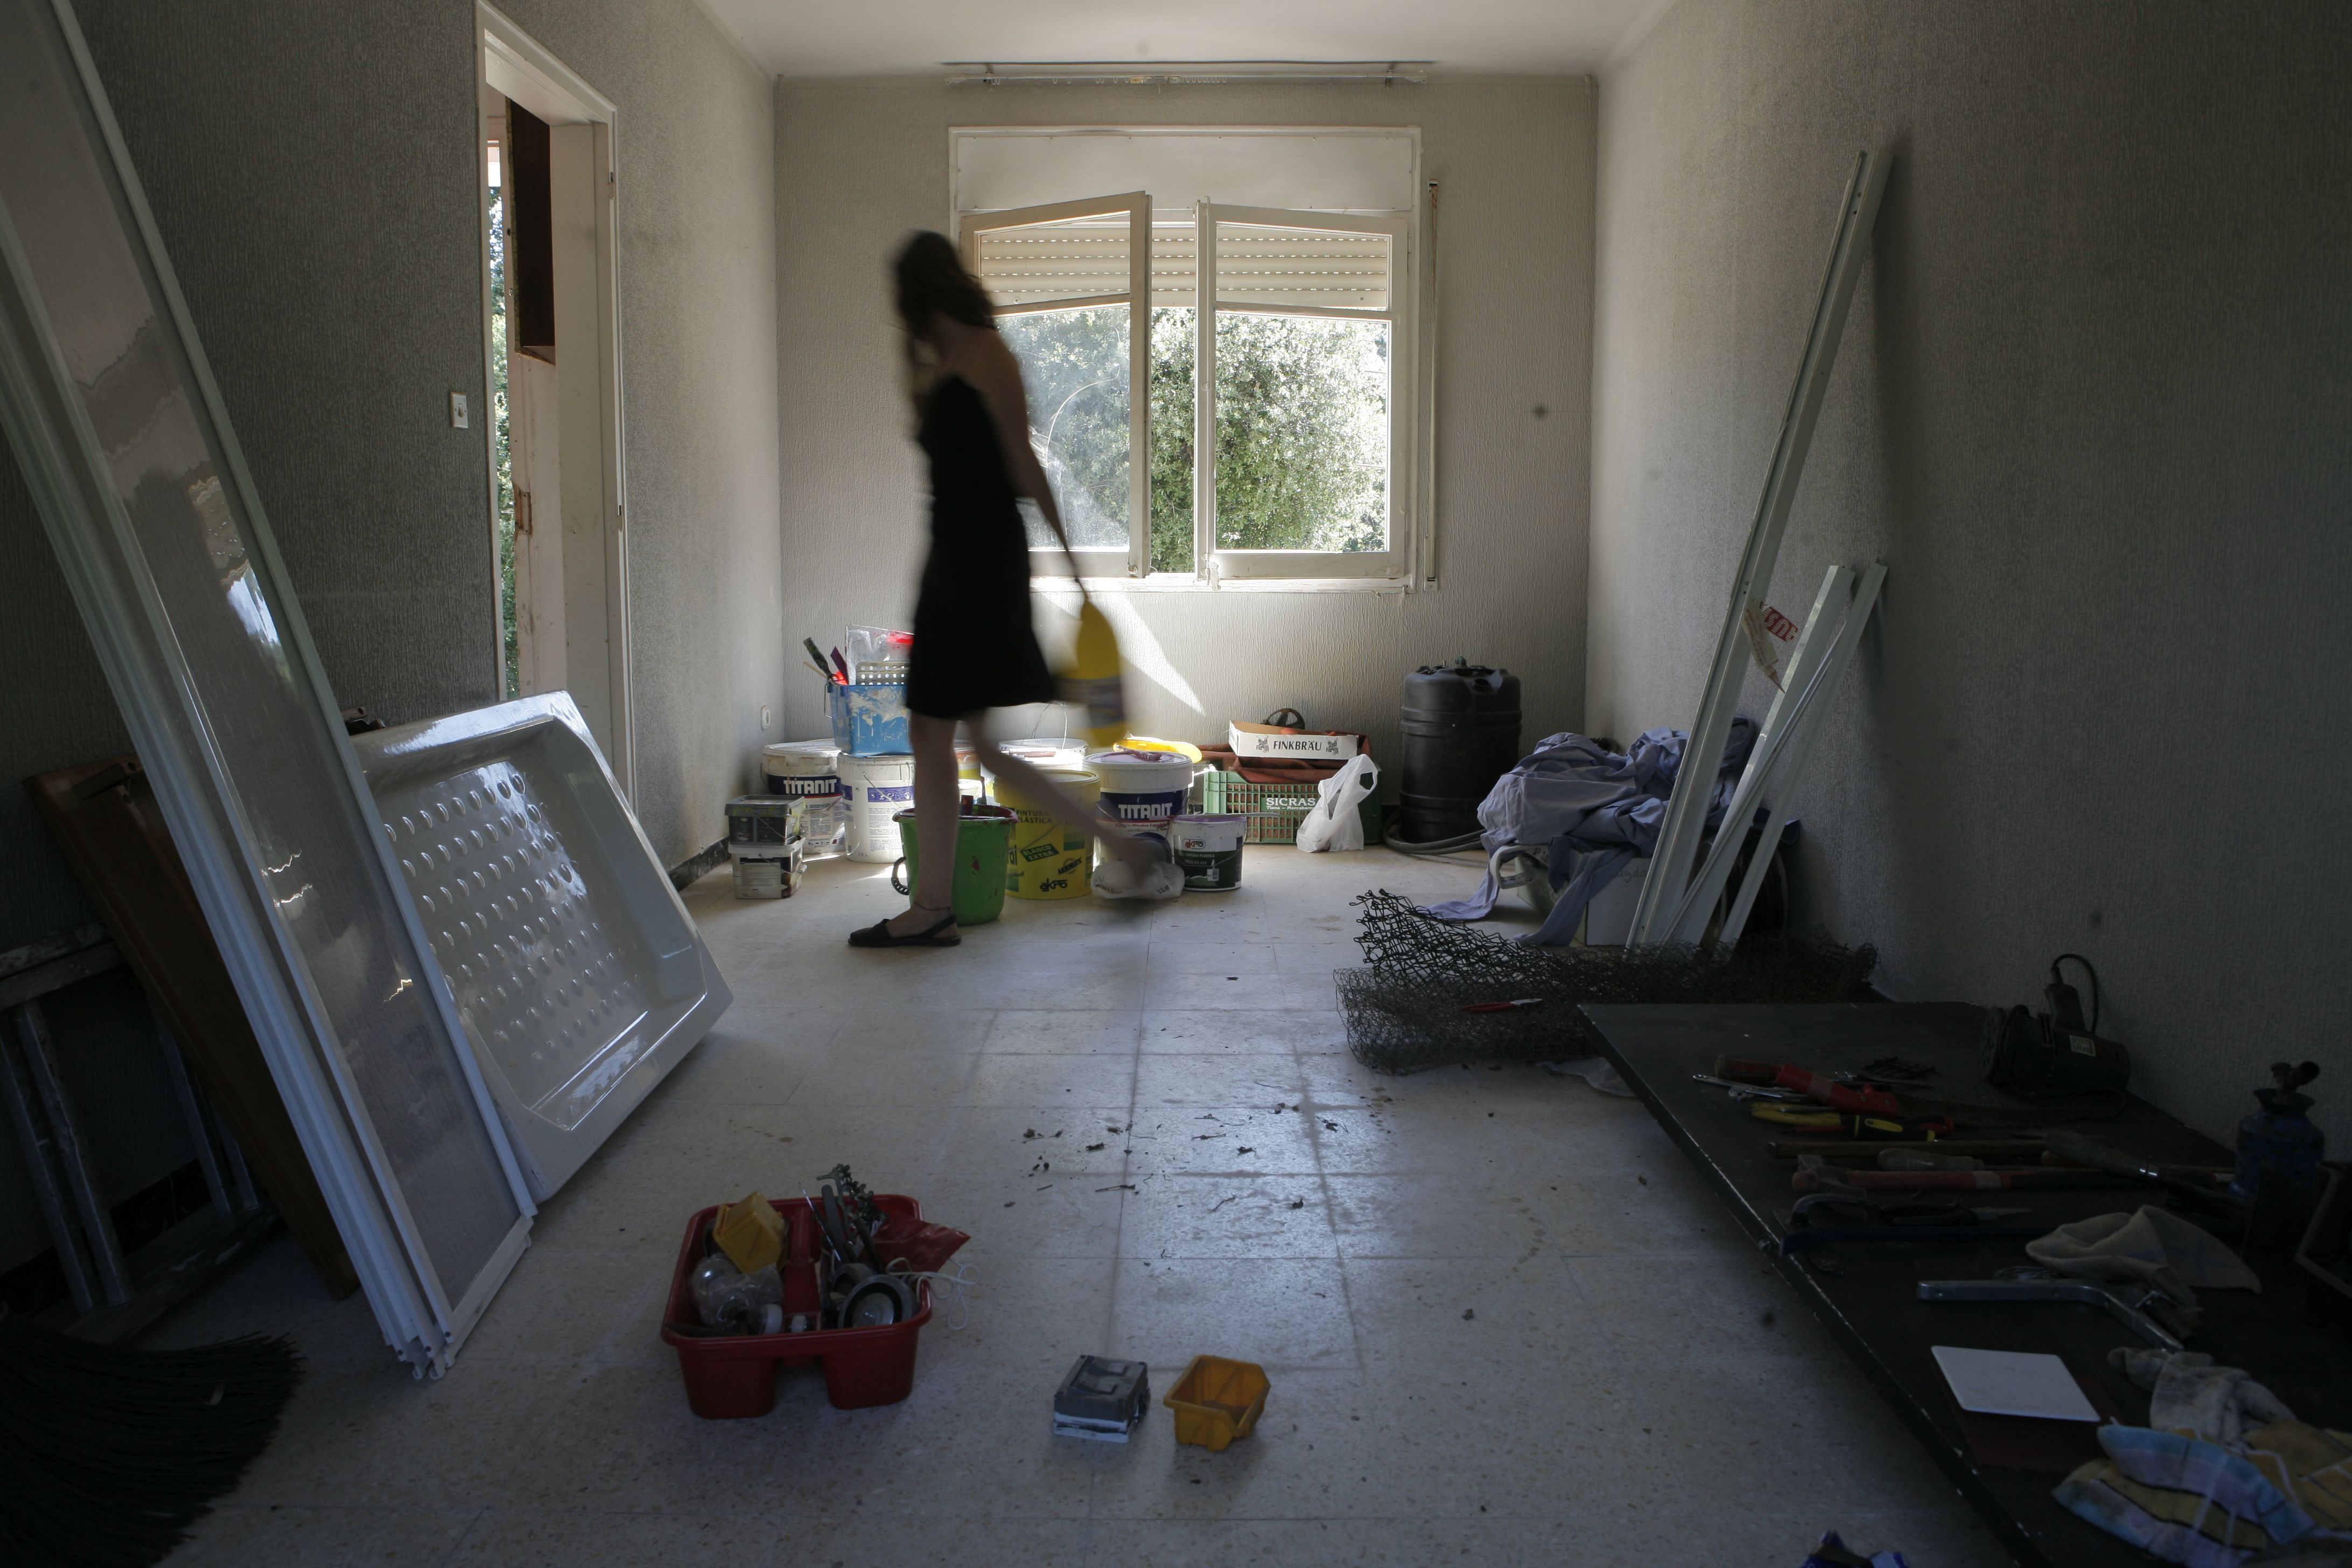 Els masovers hauran d'encarragar-se de les reformes interiors de les cases. FOTO: Artur Ribera